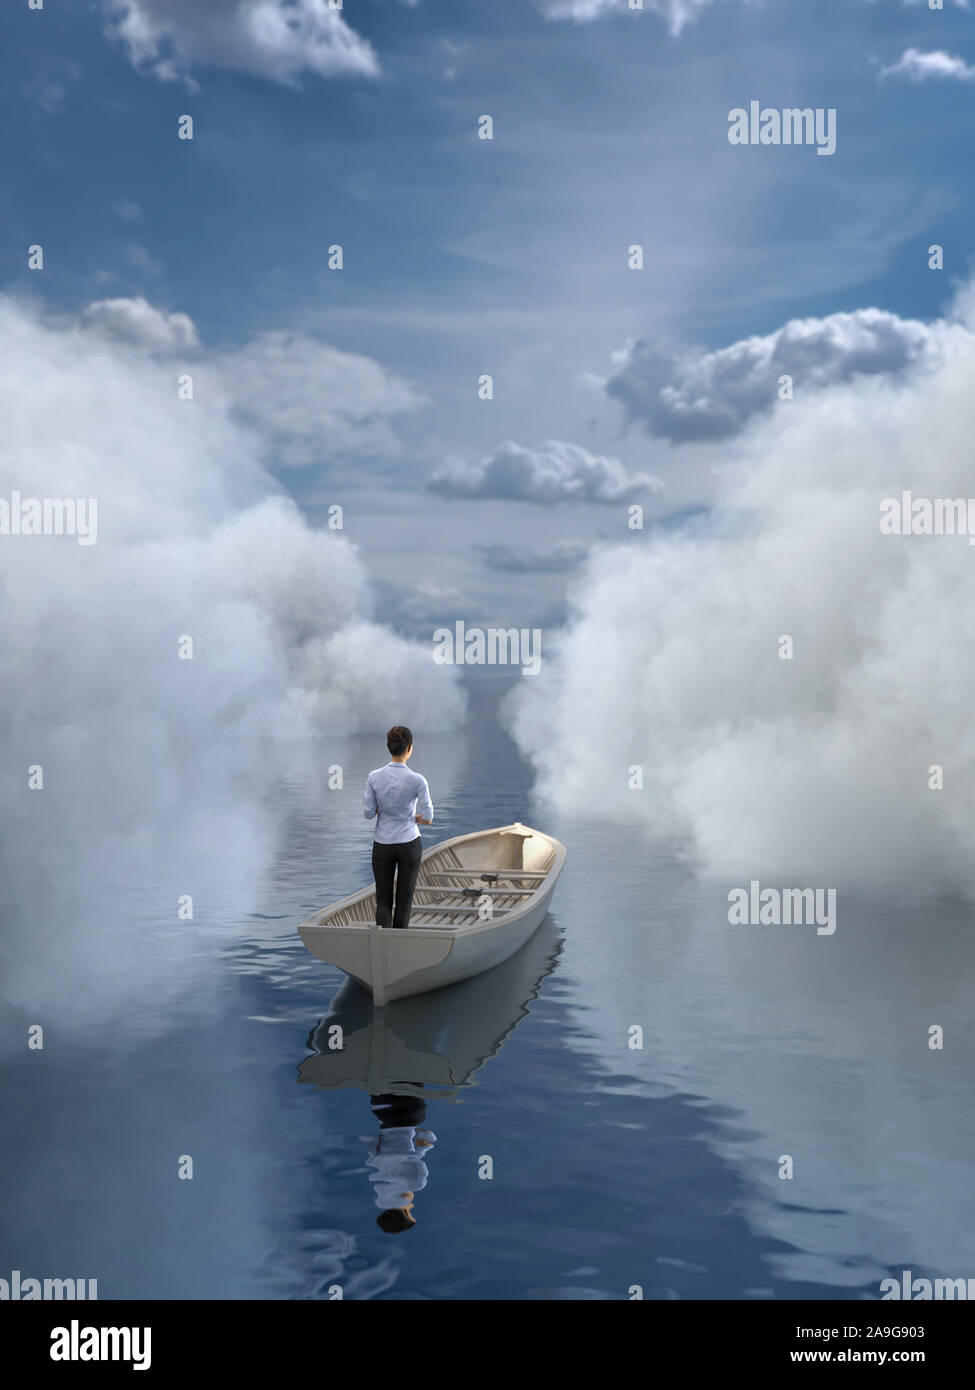 La mujer está navegando en un barco a través de las nubes Foto de stock